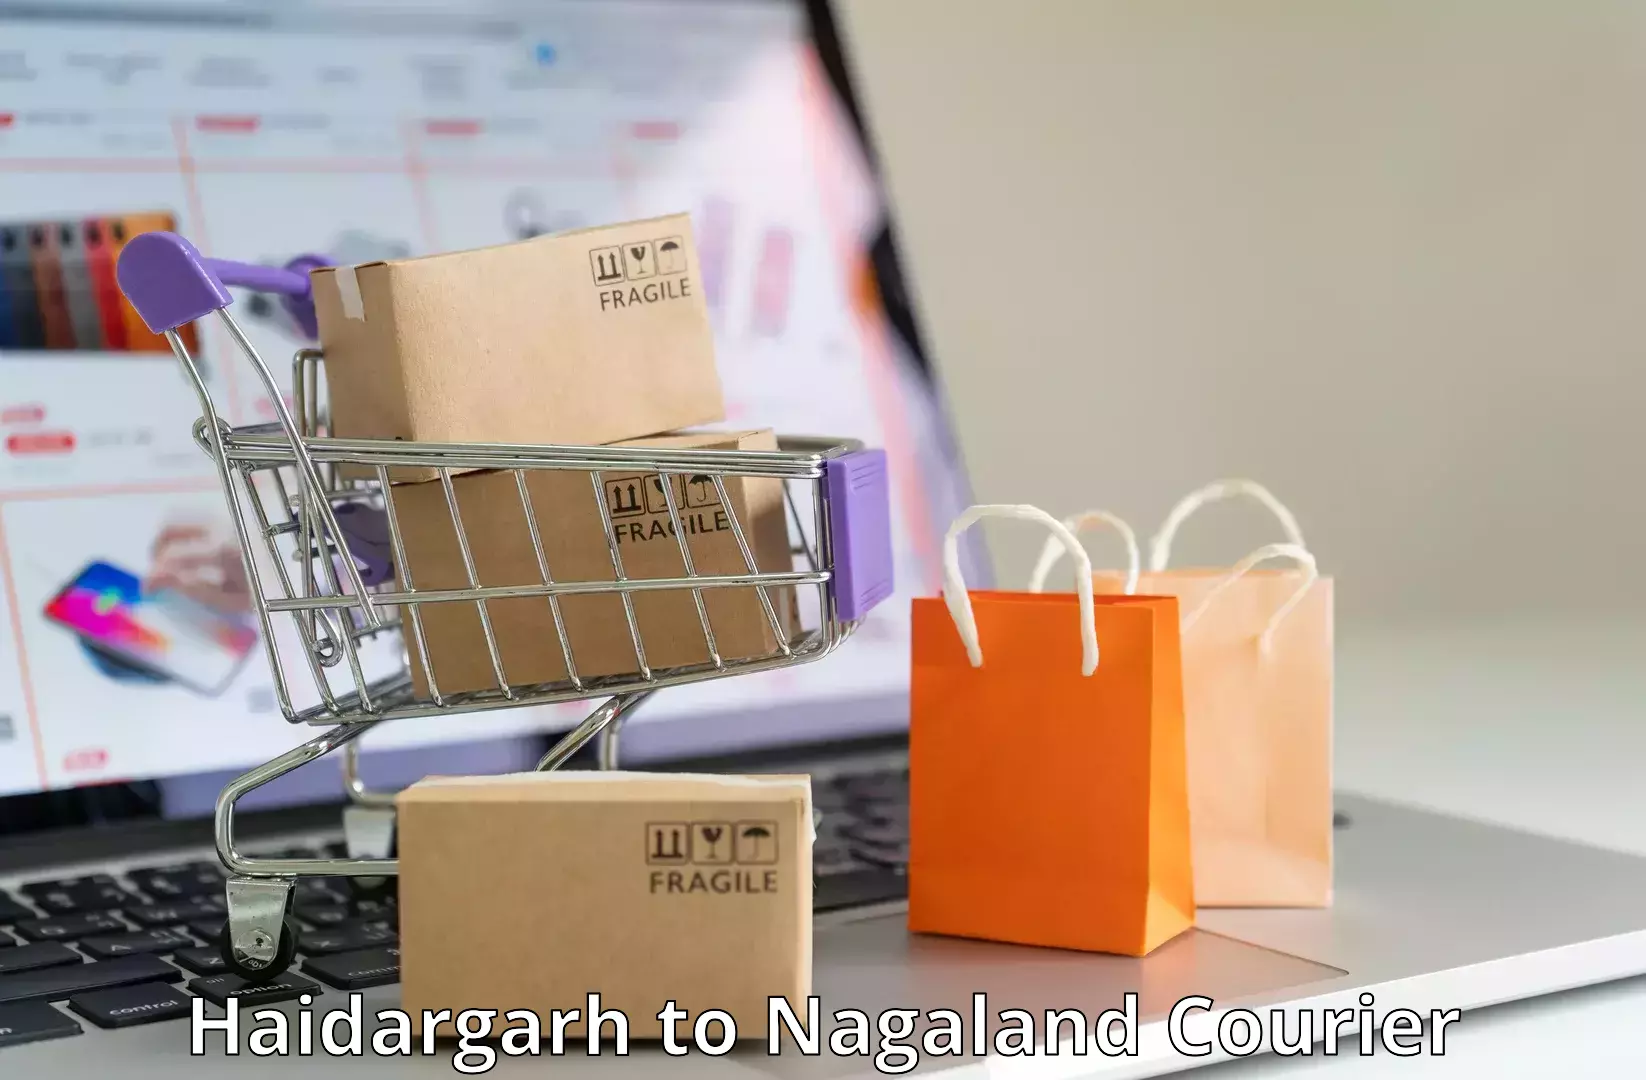 Global shipping networks Haidargarh to NIT Nagaland